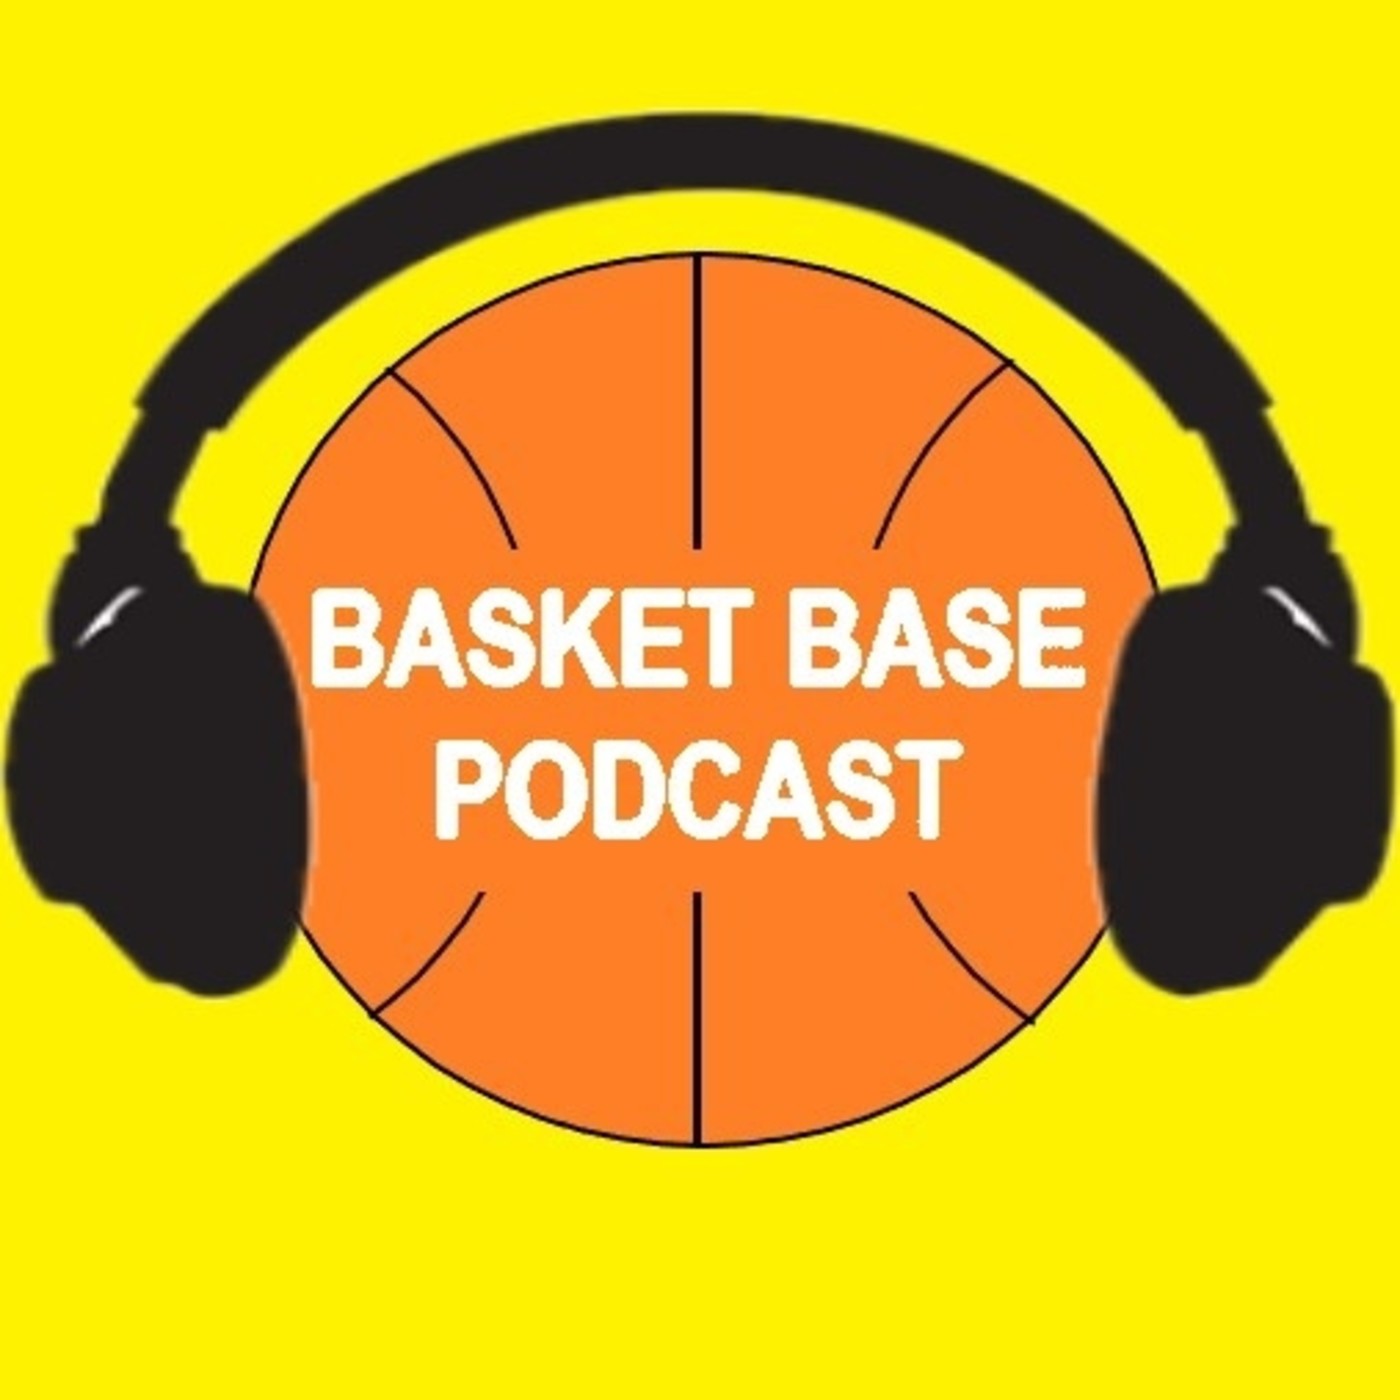 Basket Base Podcast - Episodio 2 - Post del Europeo U18F + Previa del Mundial U19F